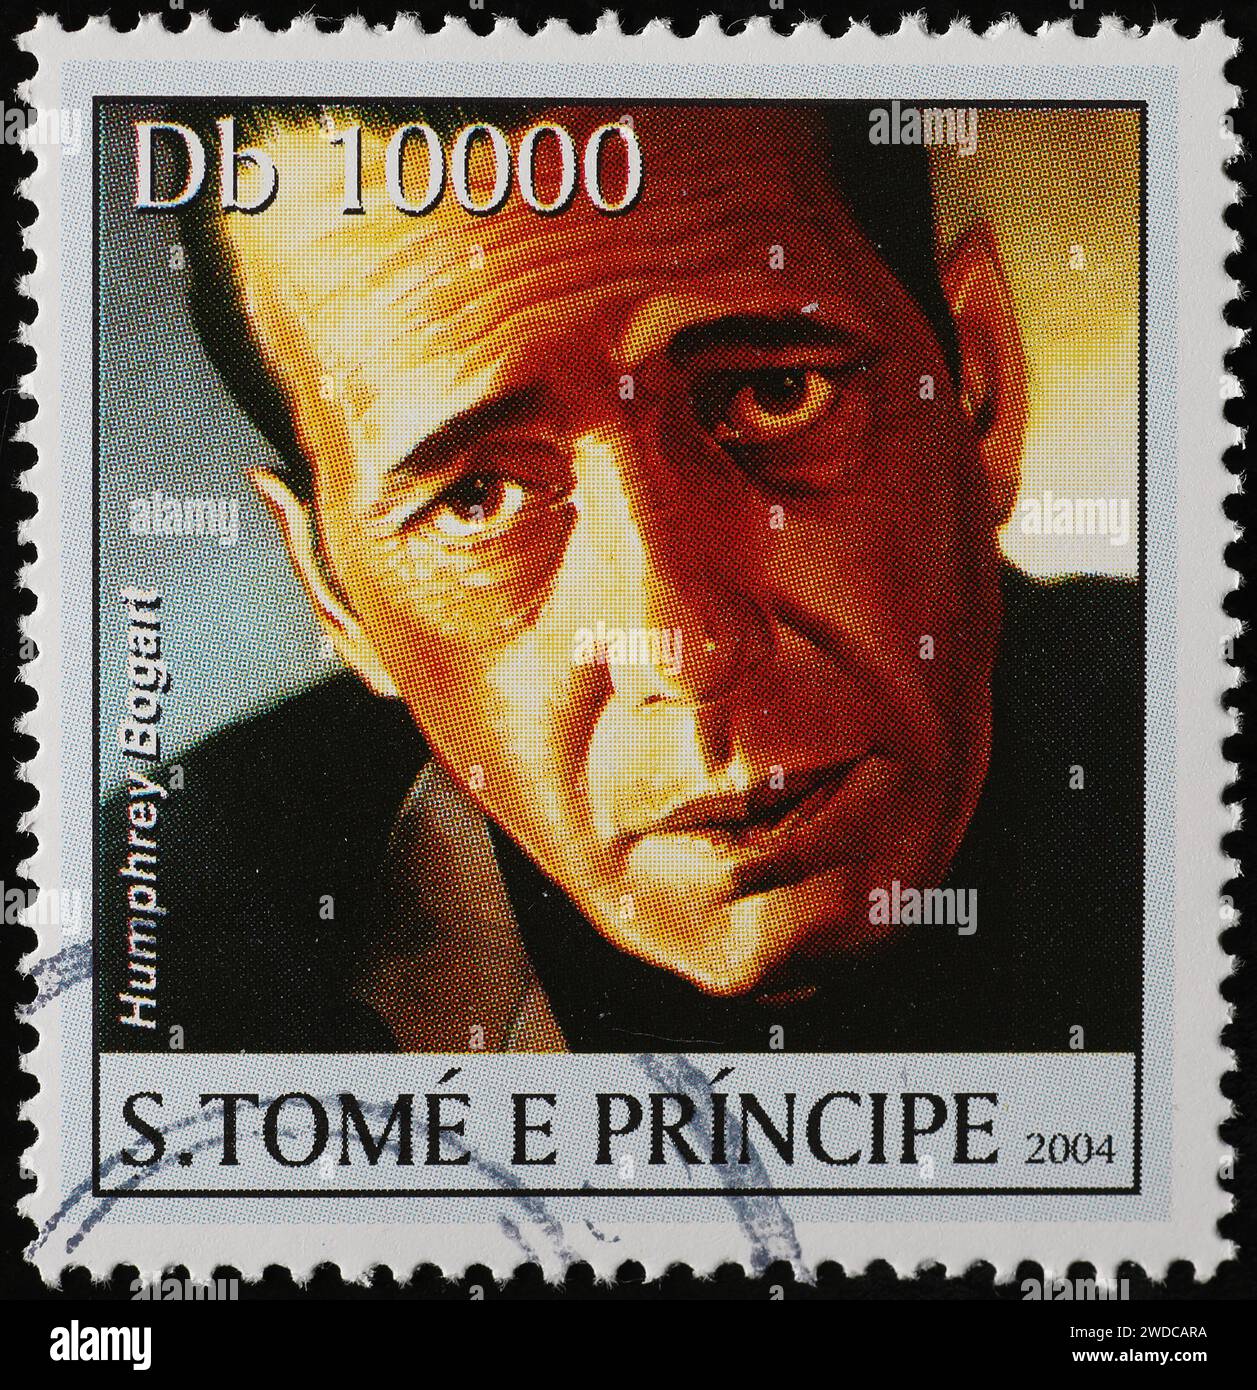 Primo piano di Humphrey Bogart sul francobollo africano Foto Stock